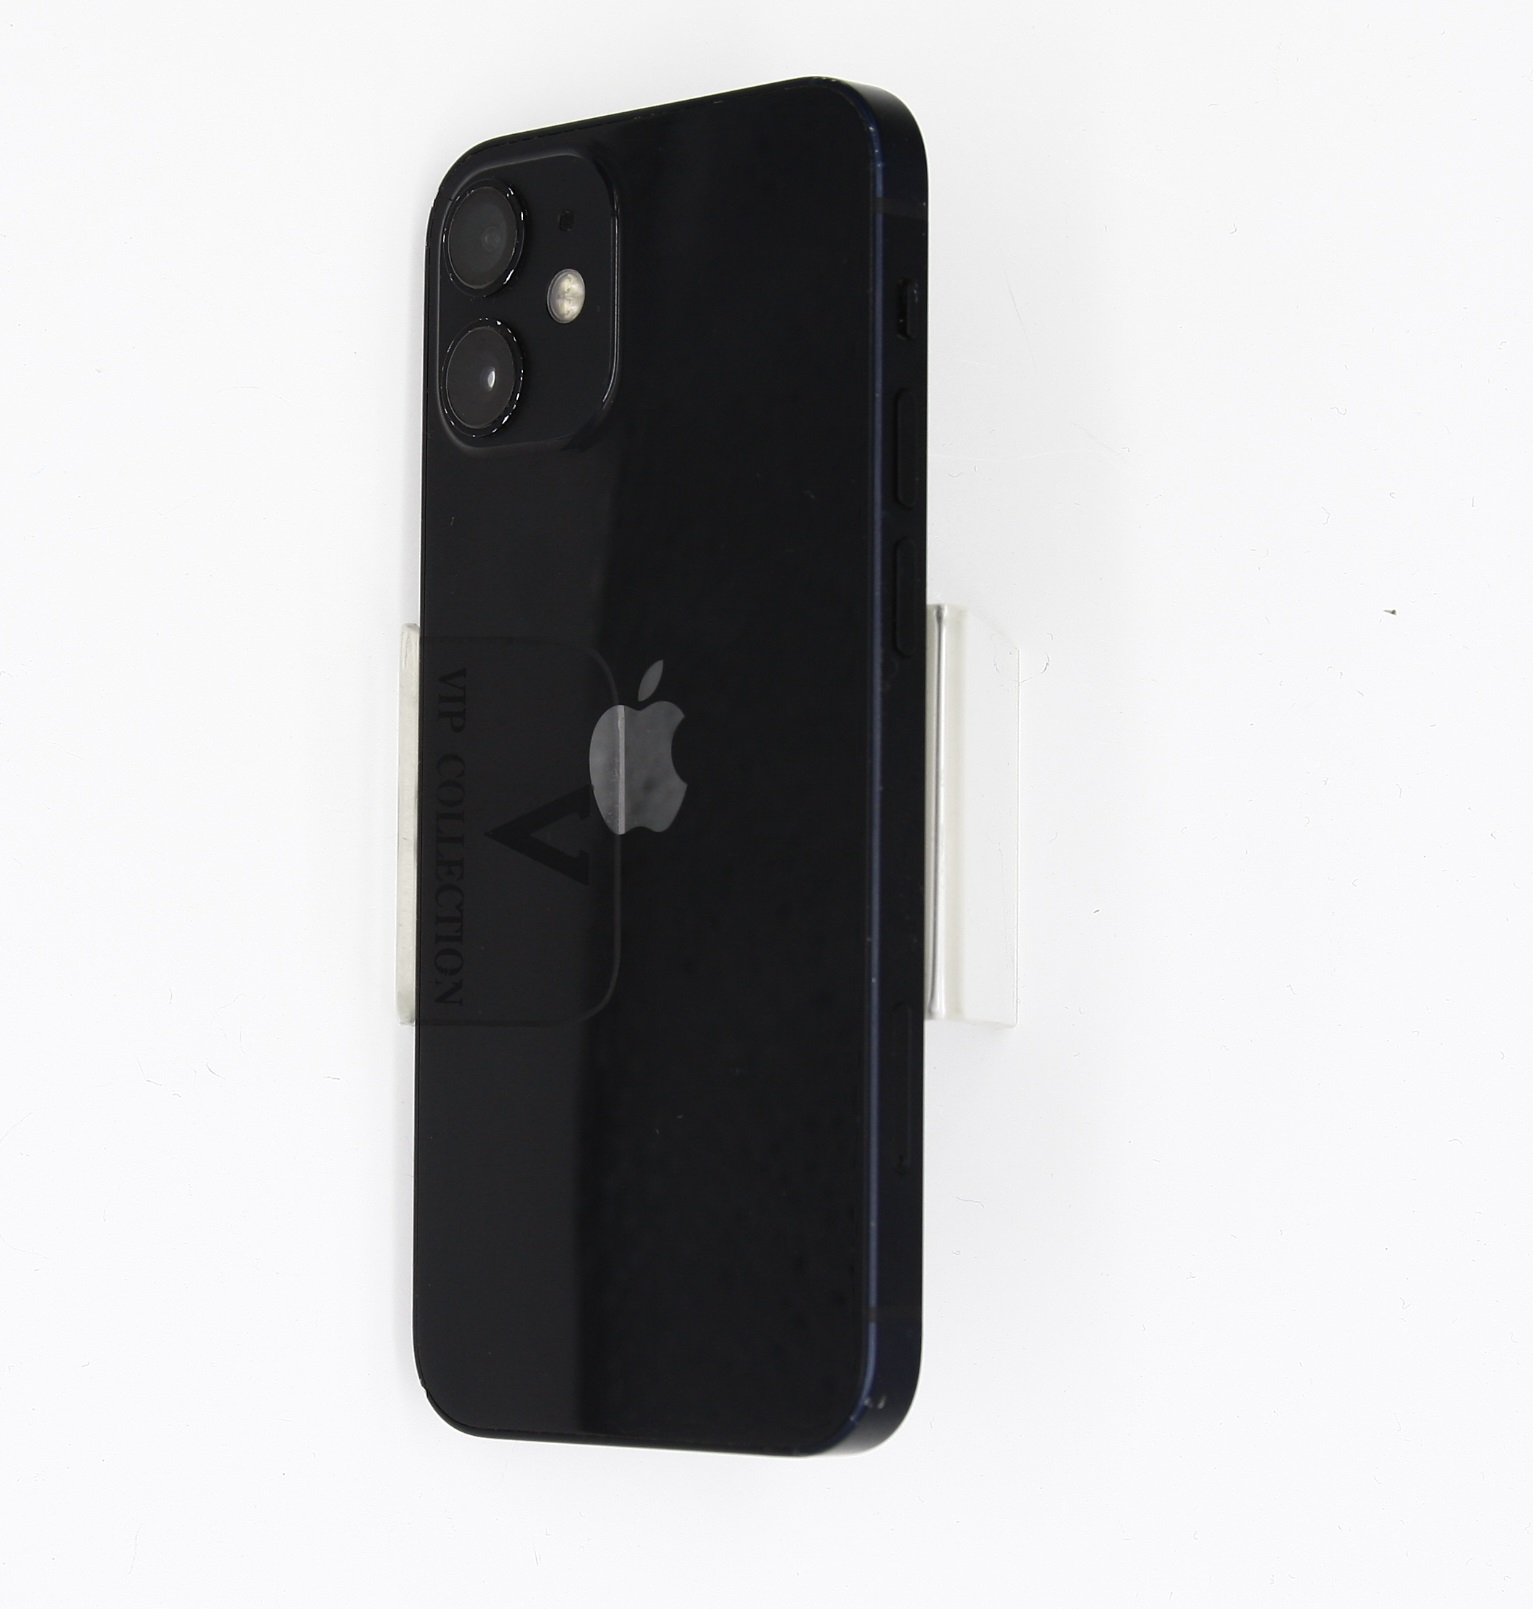 Apple iPhone 12 Mini 256GB Black (MGDR3J/A) 4